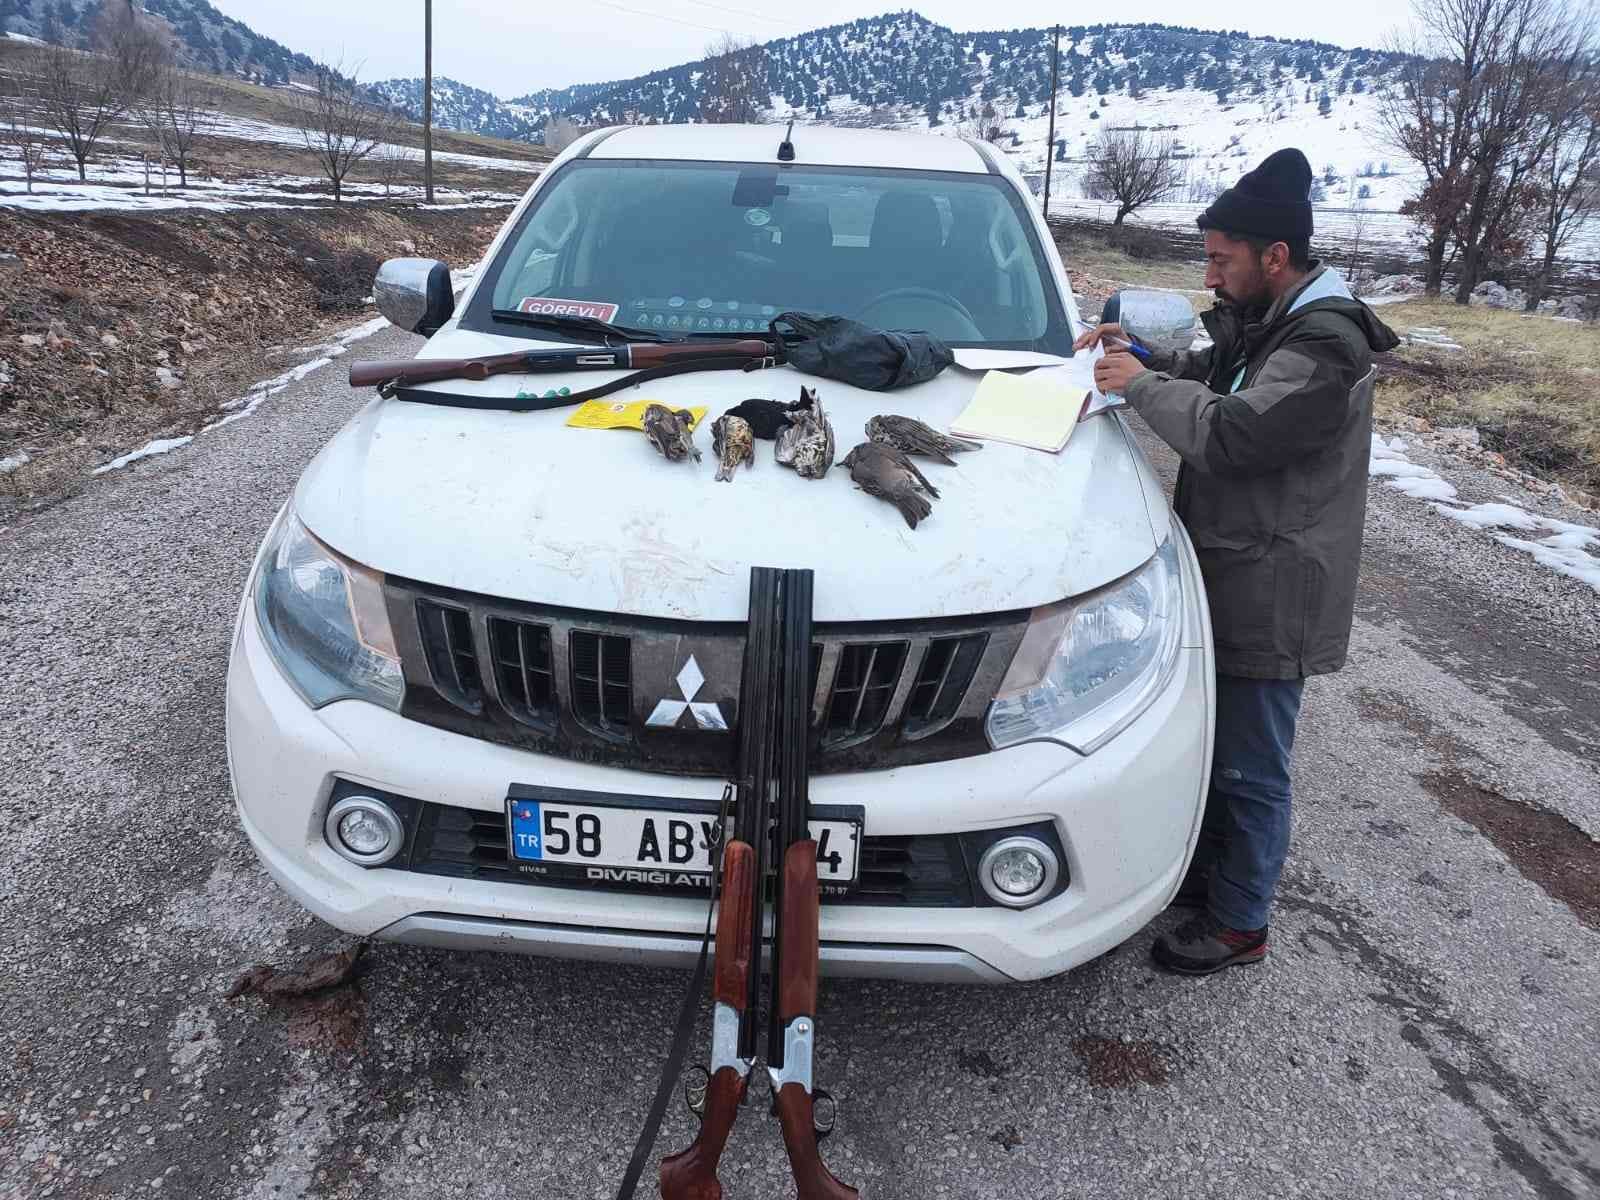 Avlanması yasak olan ardıç kuşunu vuranlara ceza yağdı #kahramanmaras